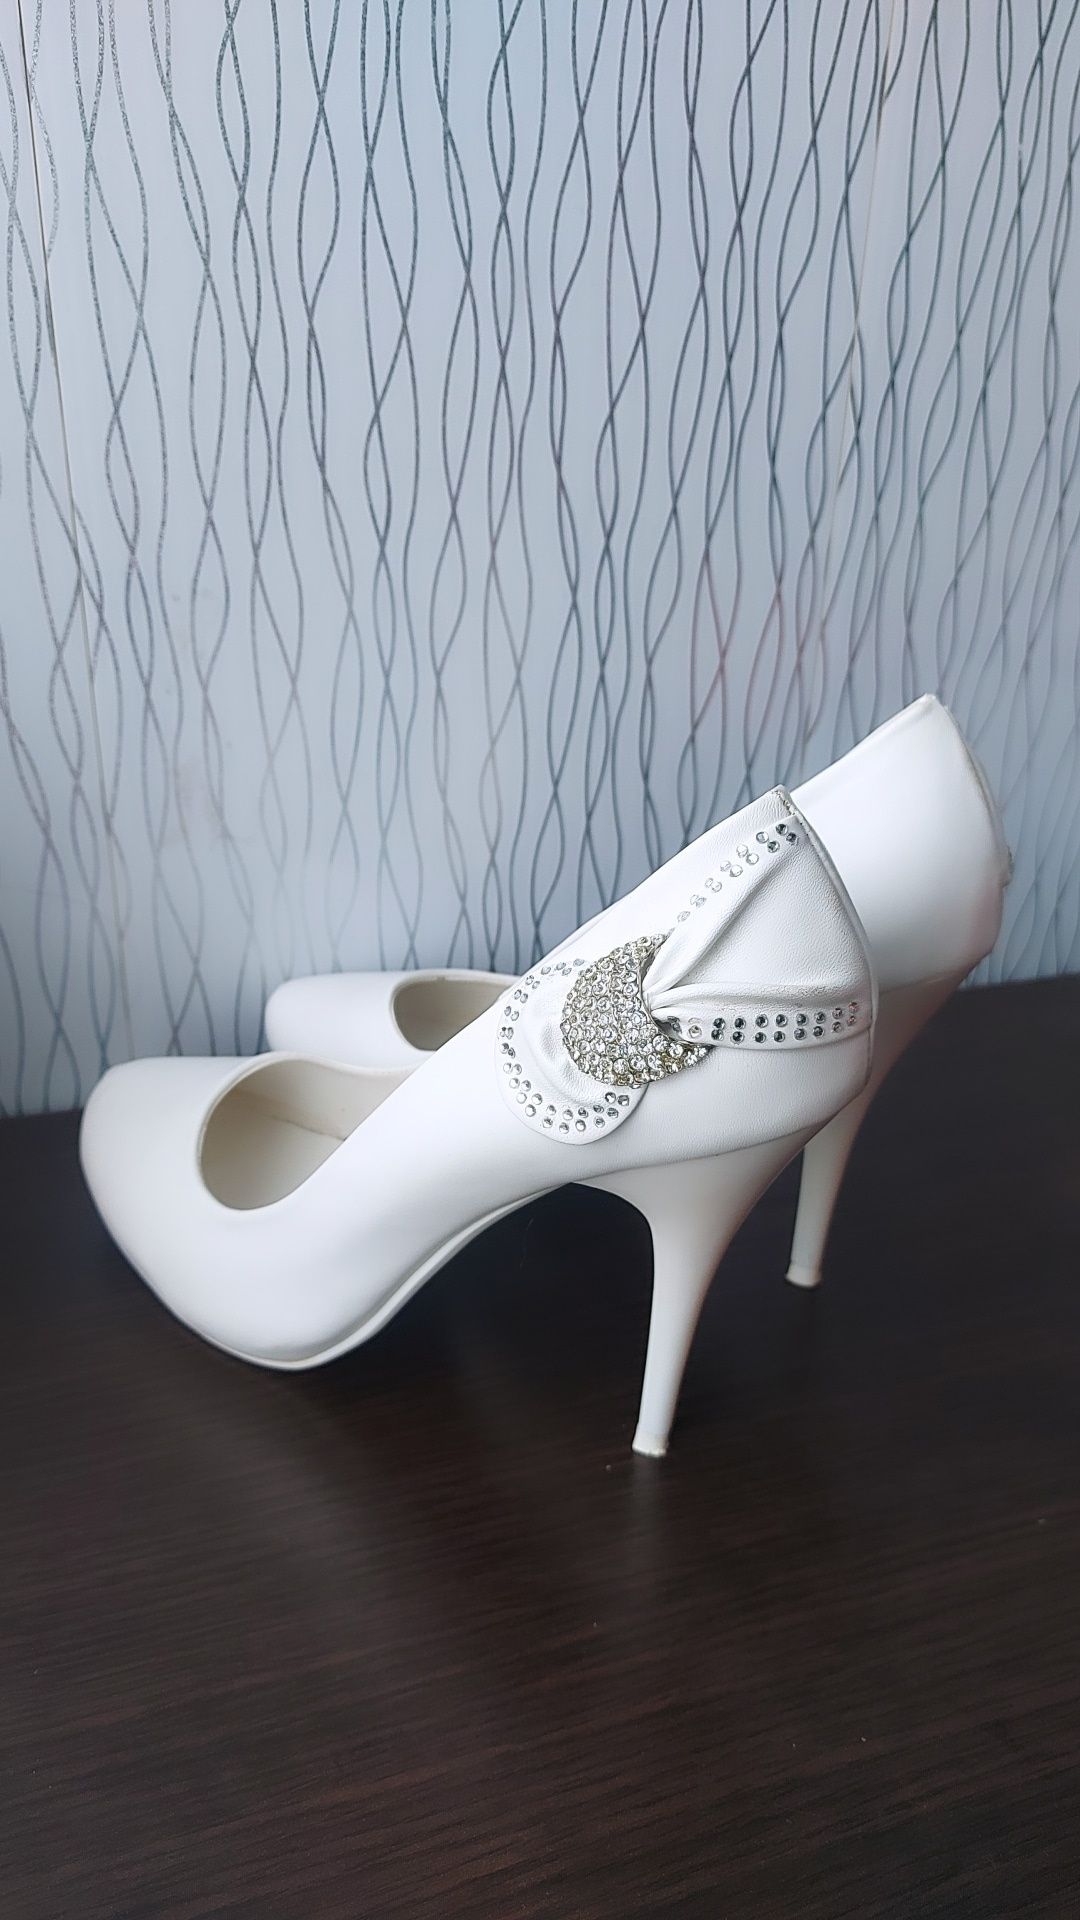 Білі жіночі туфлі